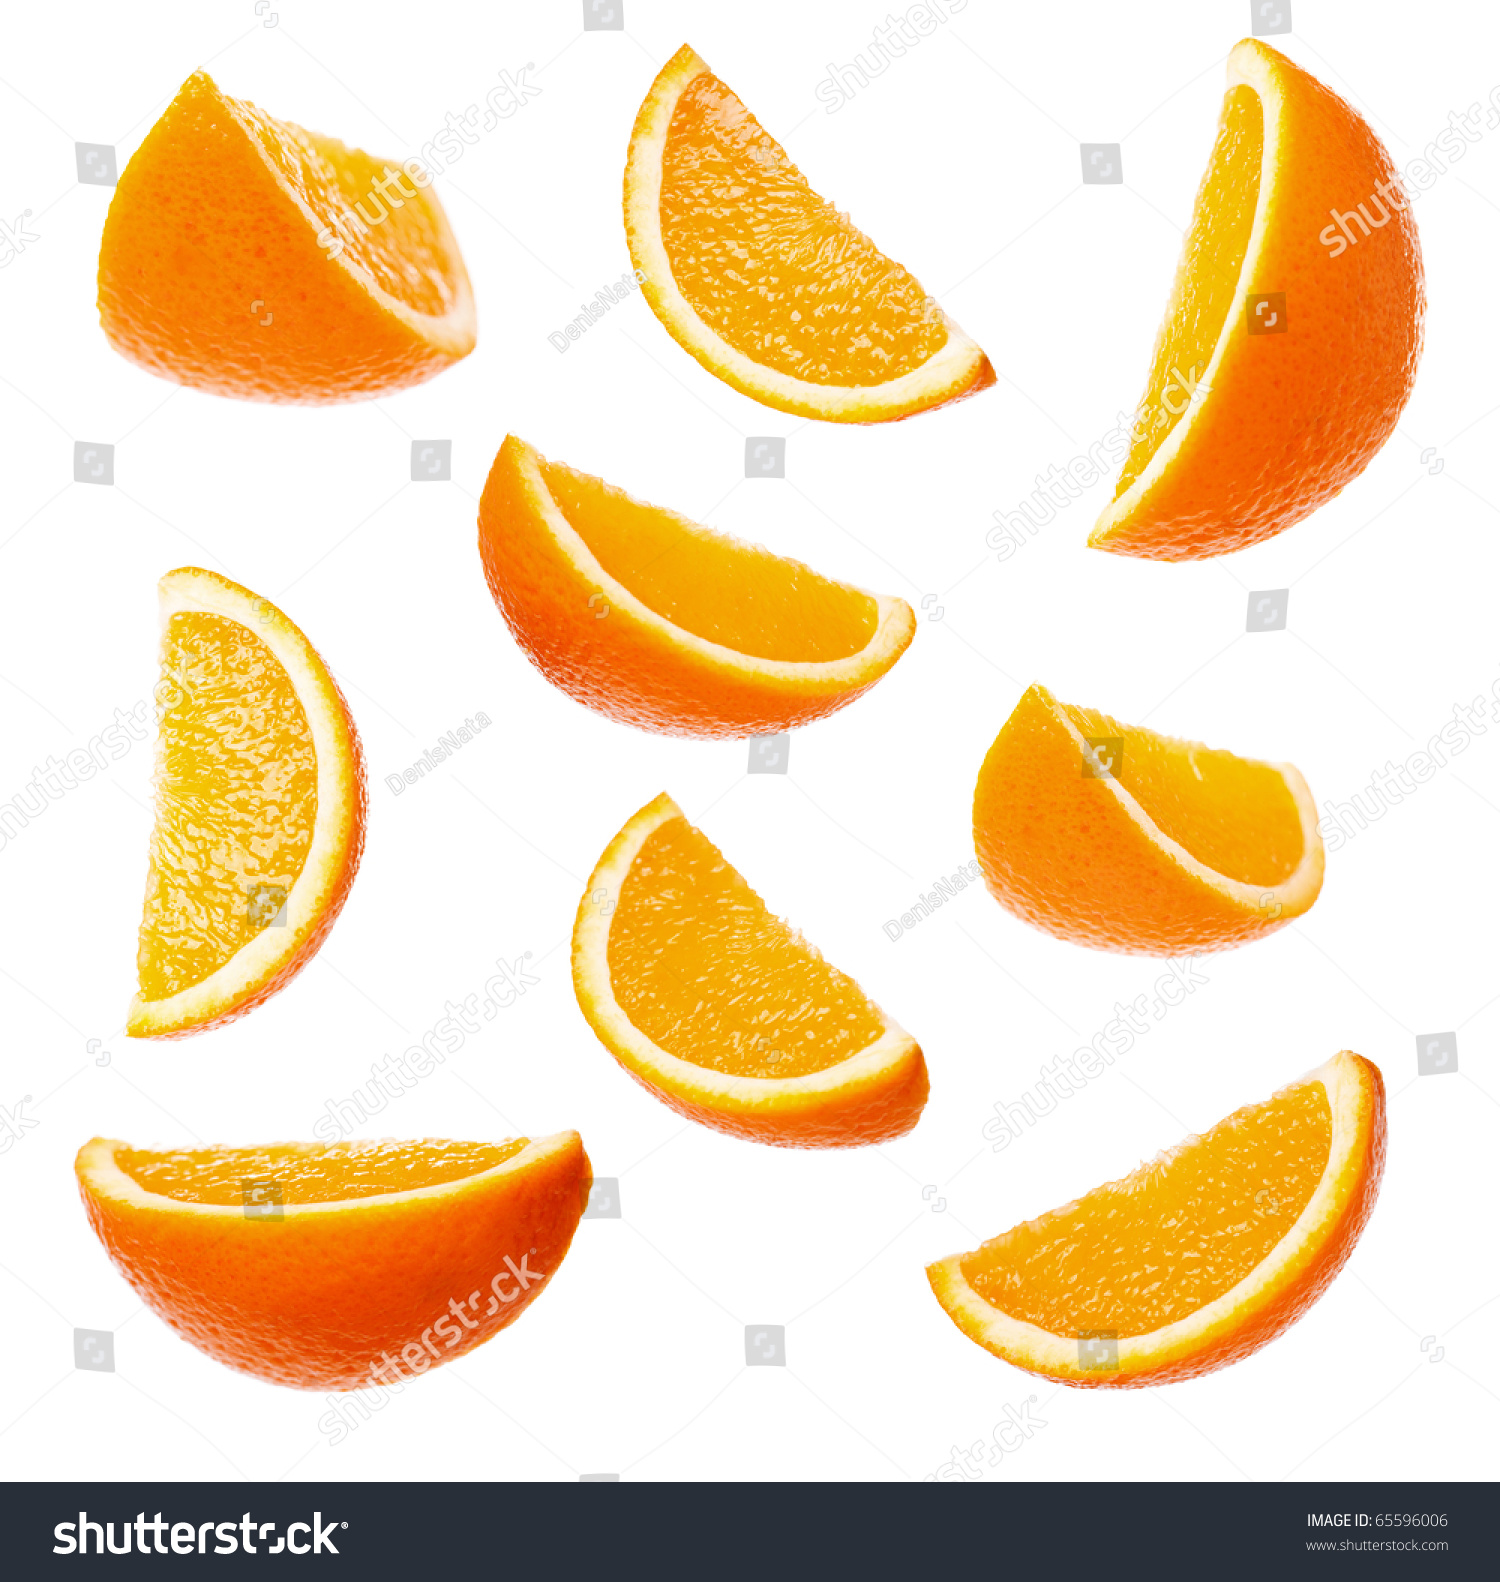 Долька апельсина референс